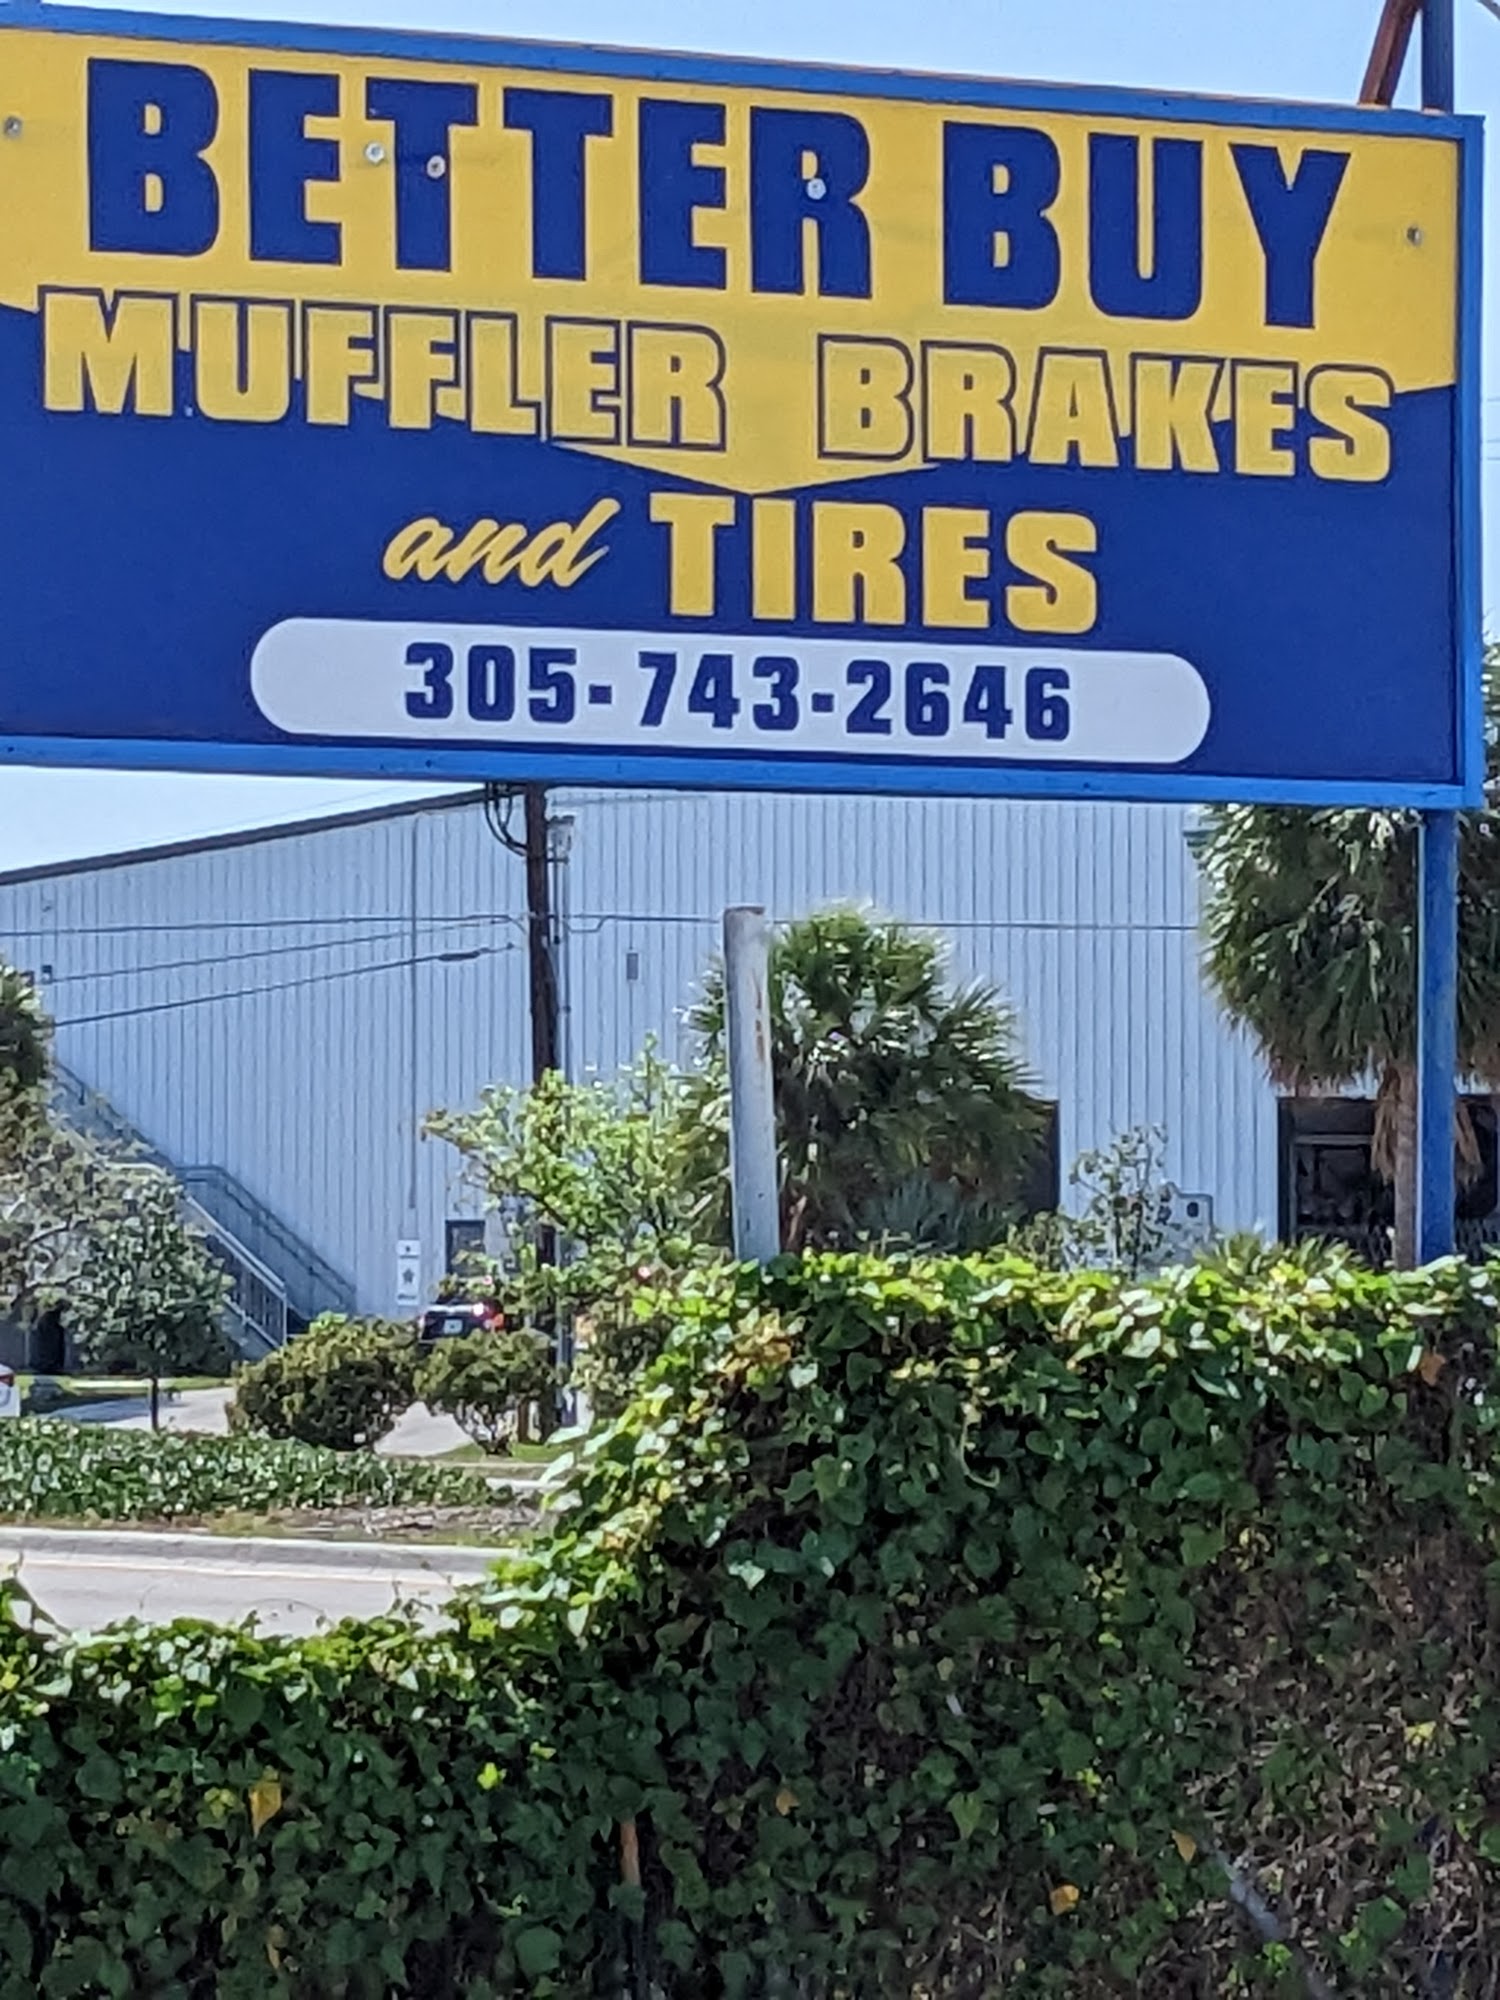 Better Buy Muffler Brake and Tires